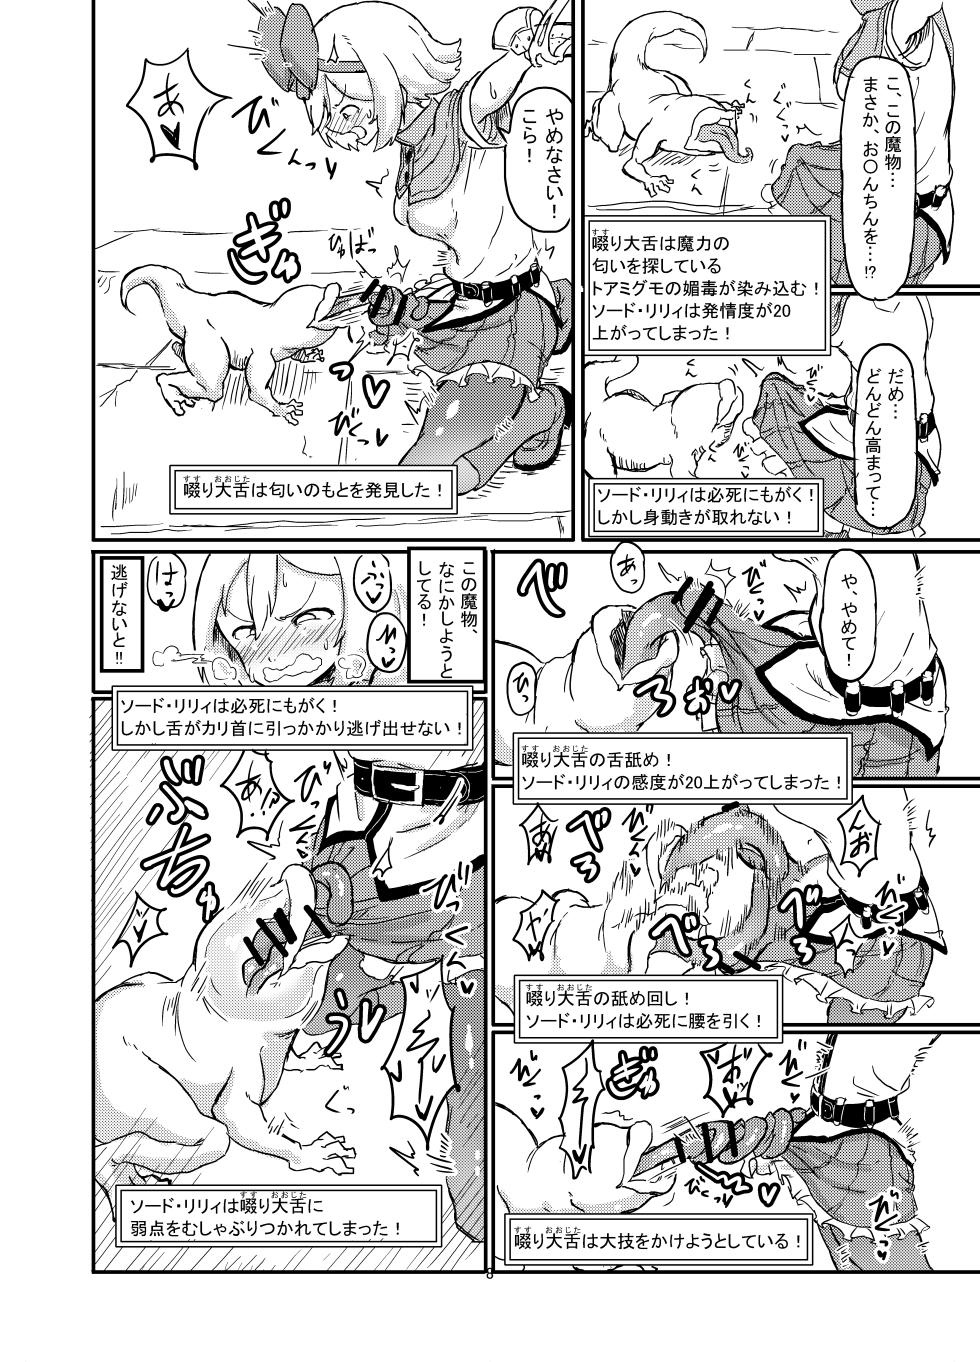 Shirokarasuya 2 - Page 9